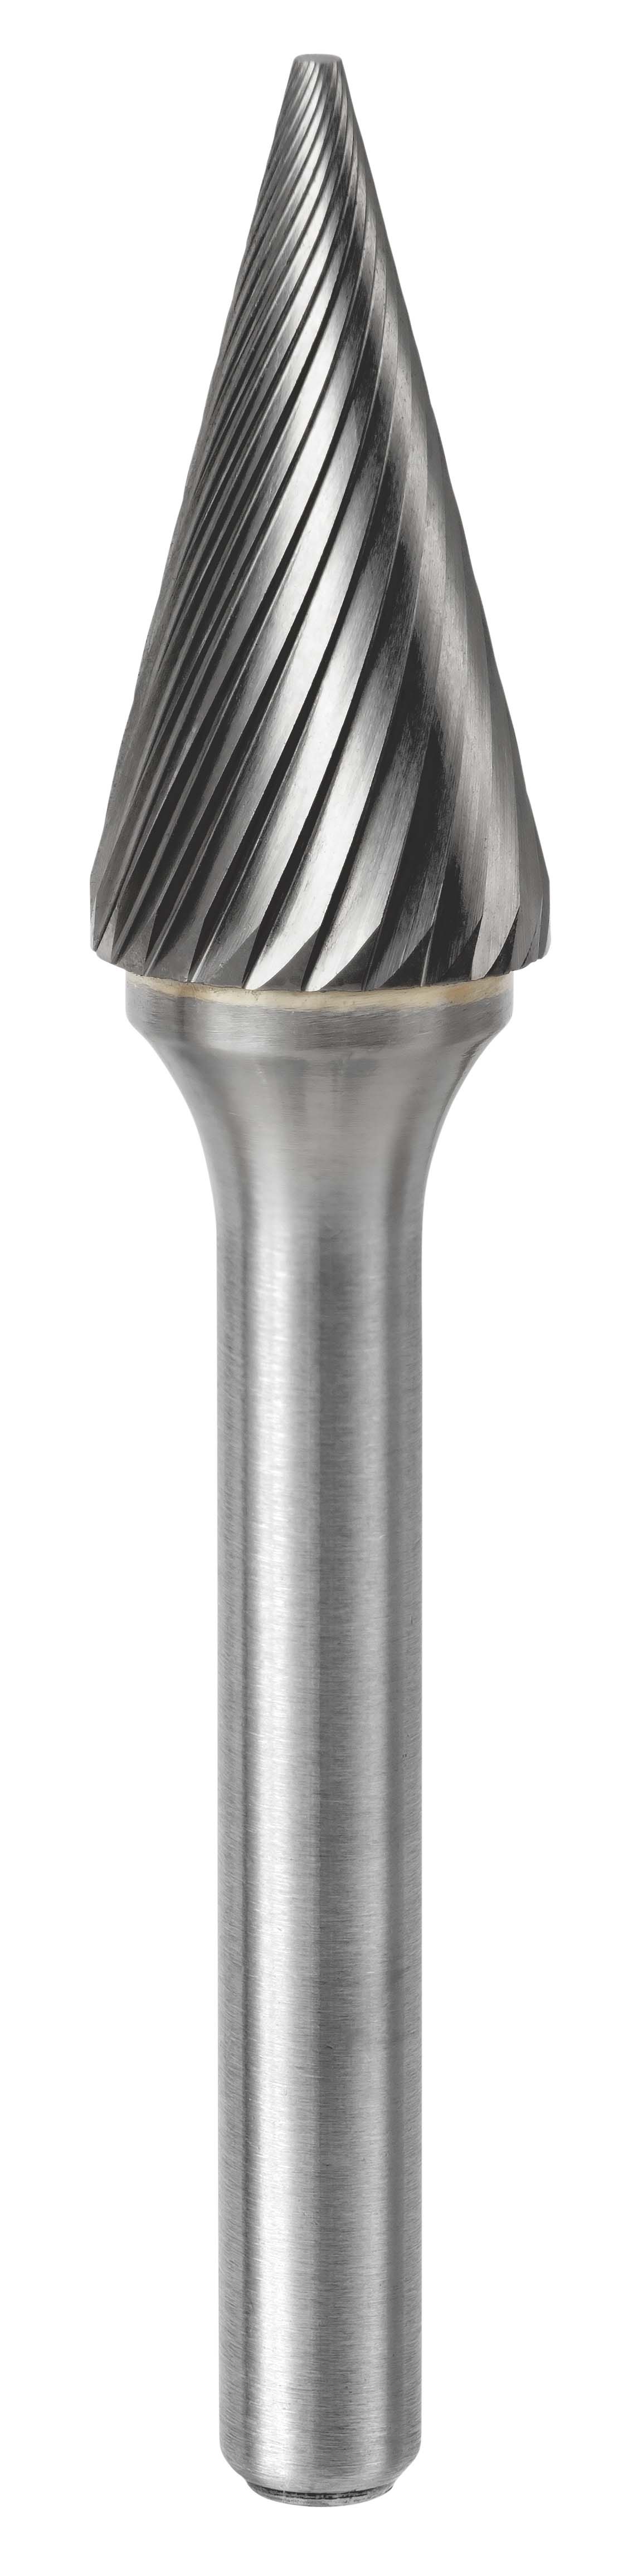 647 Fraise lime carbure conique bout pointu avec denture croisée Ø6 mm - Coupe A 